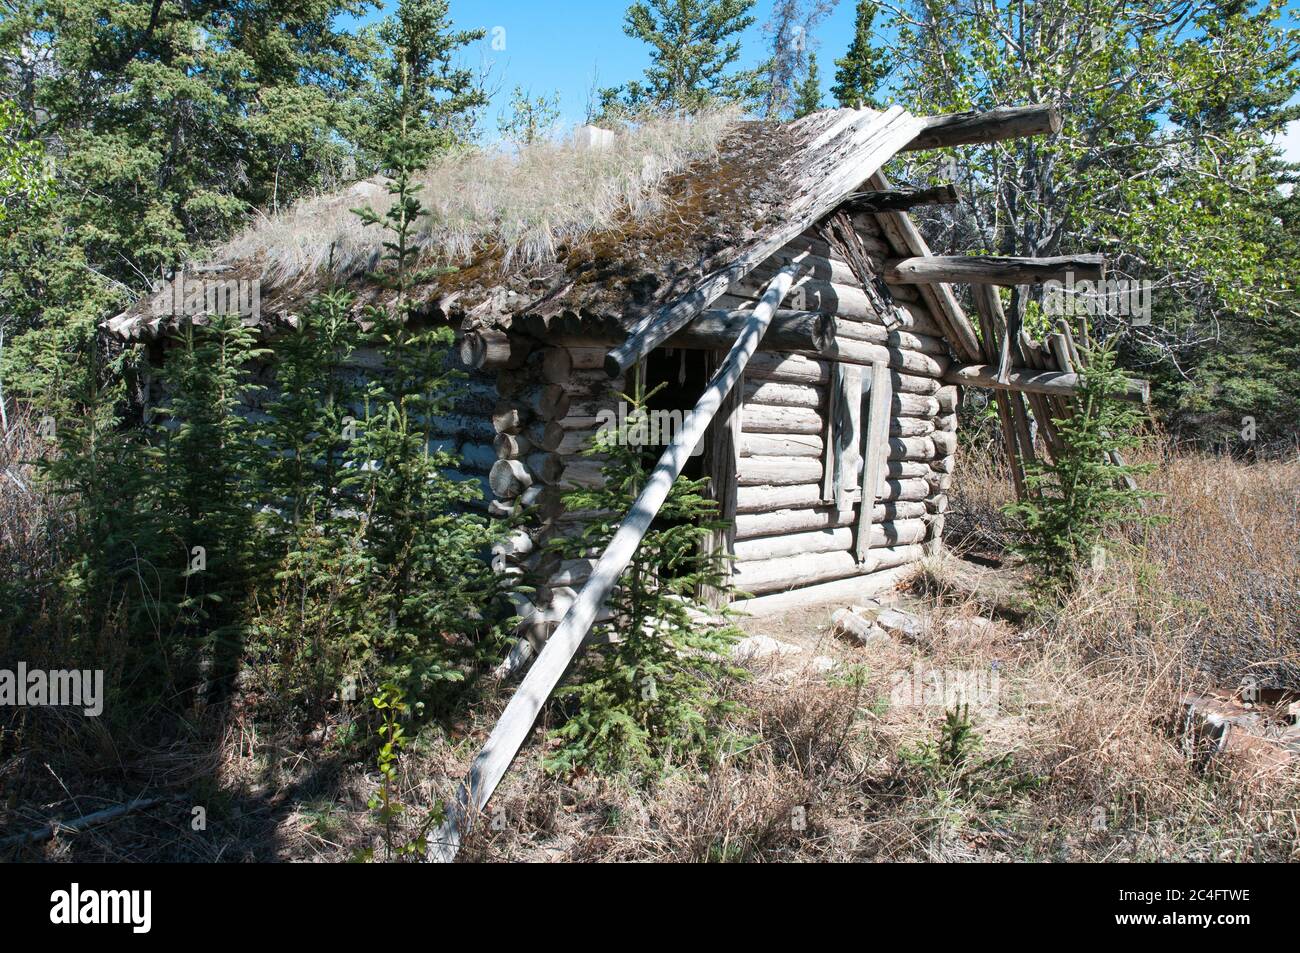 Une cabane en rondins de prospecteur sauvage historique de la ruée vers l'or du Klondike dans le parc national Kluane, territoire du Yukon, Canada. Banque D'Images